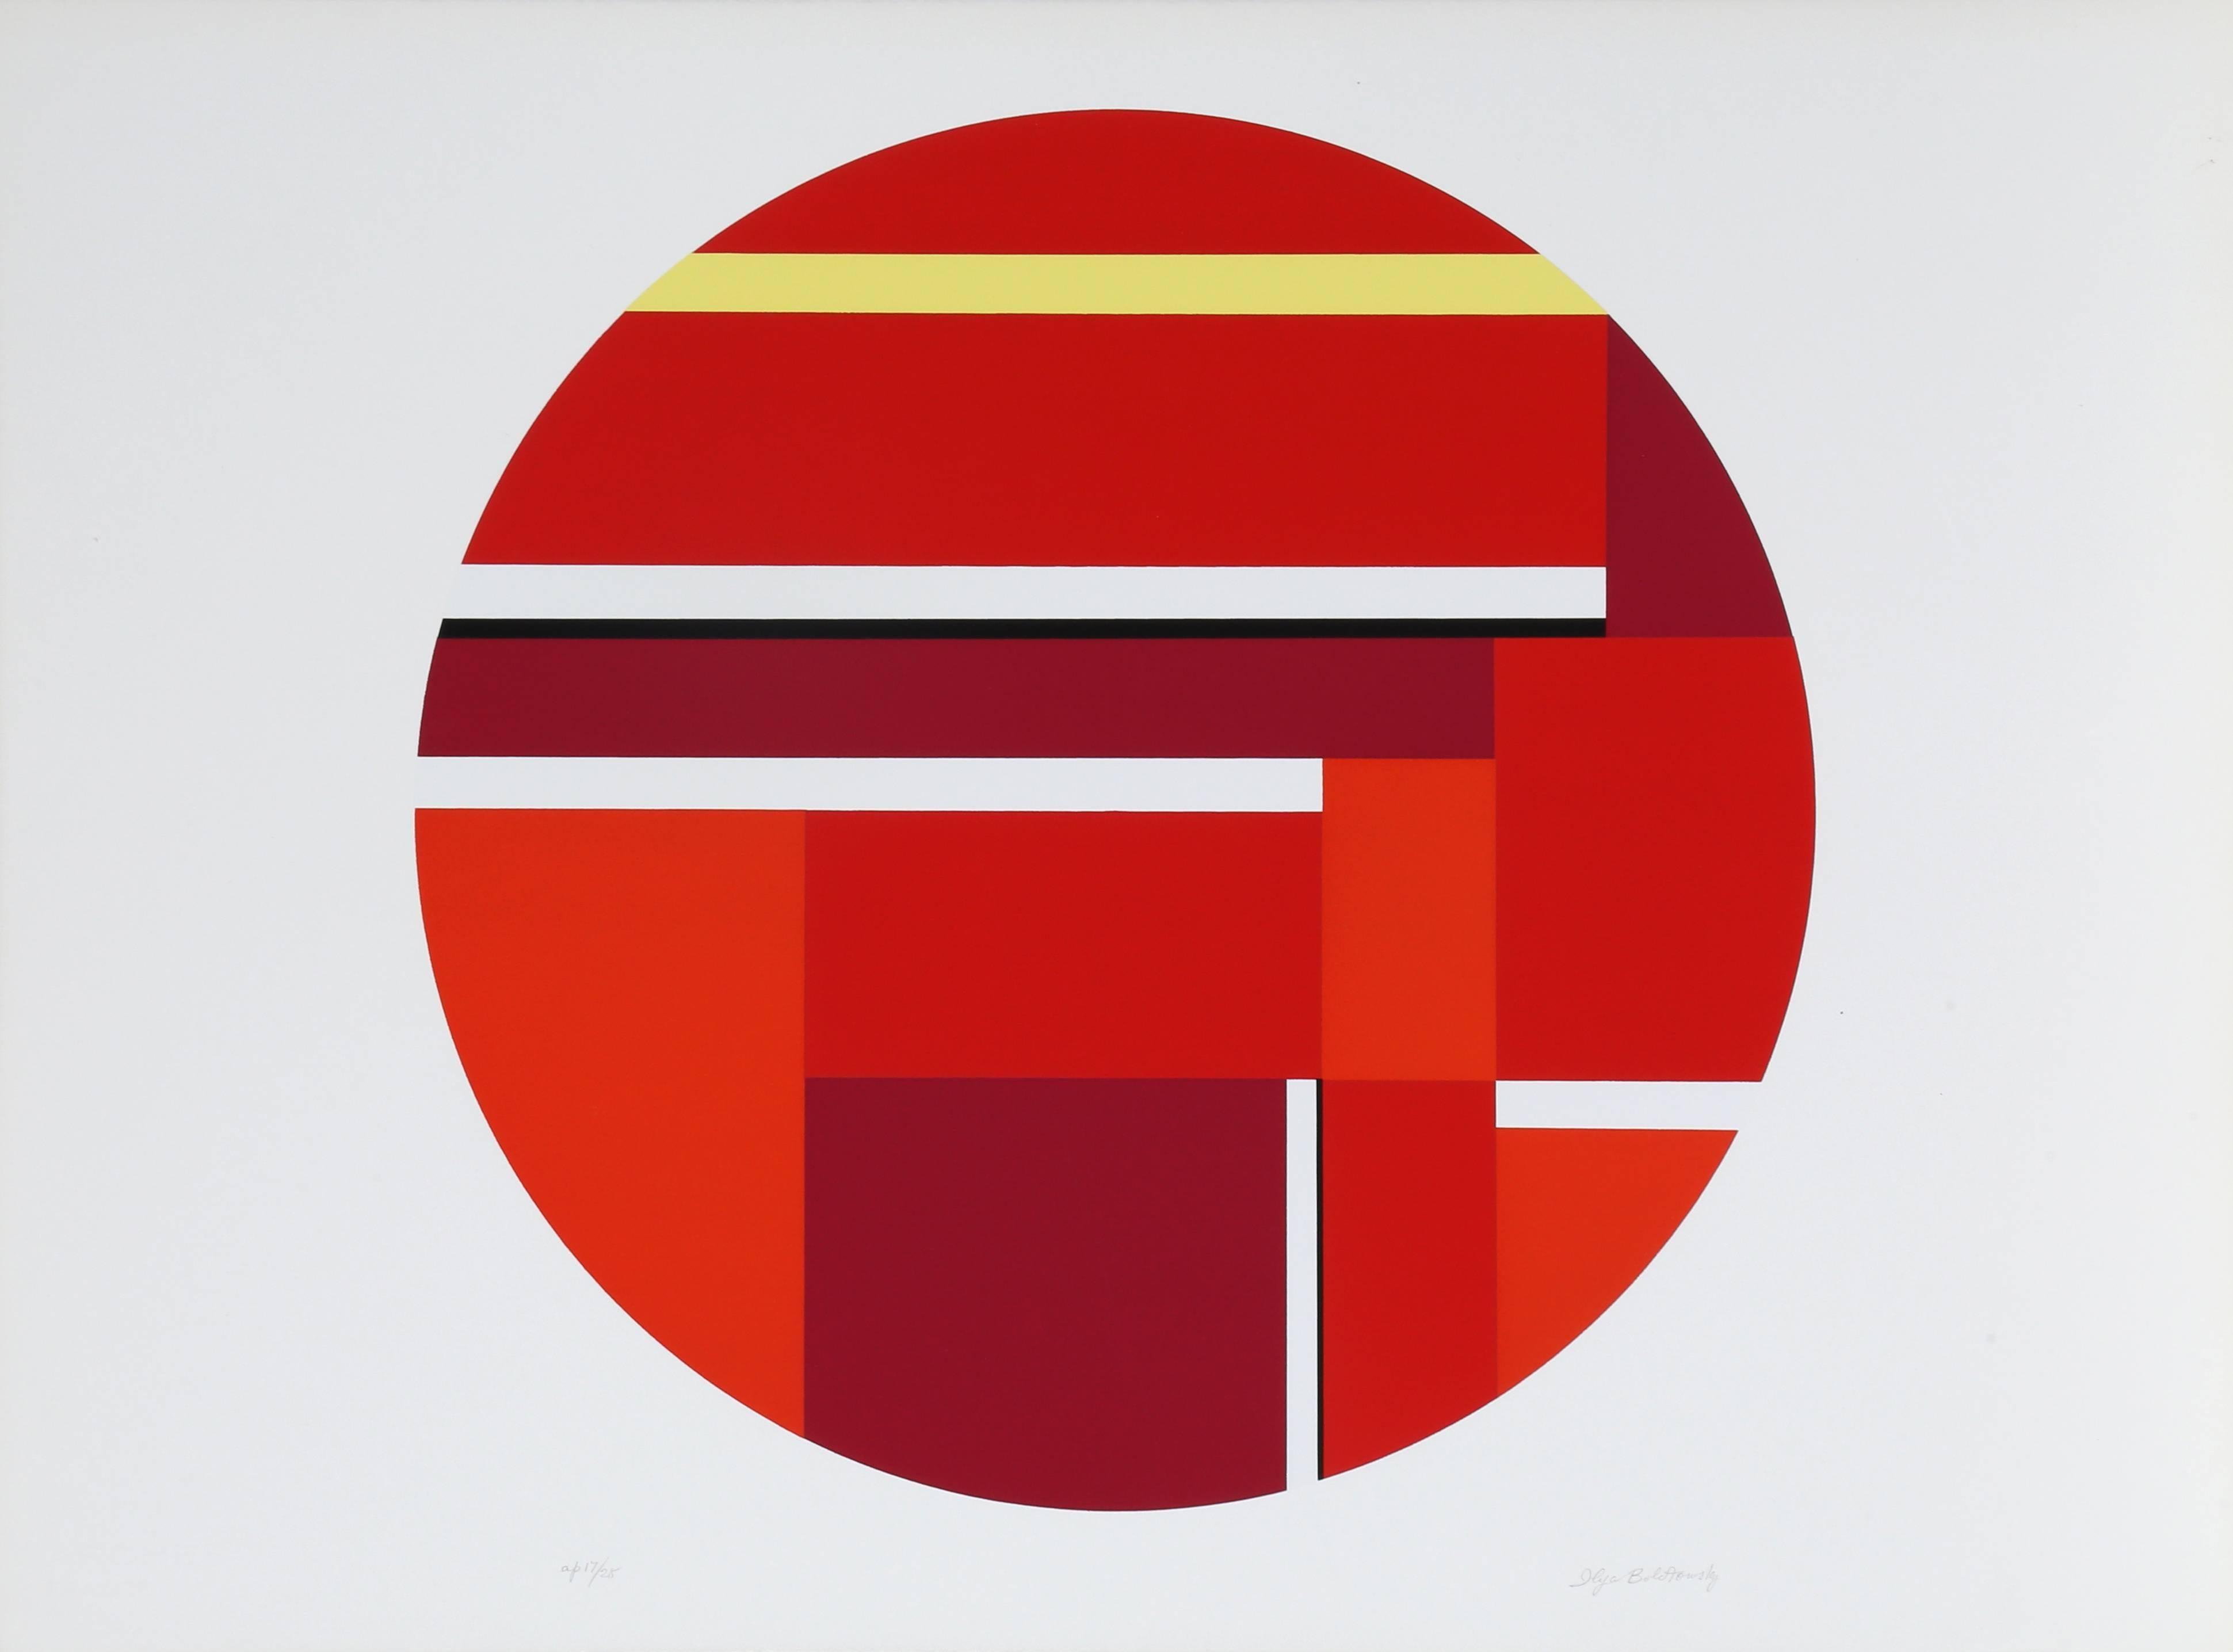 Tondo rouge, sérigraphie abstraite géométrique d'Ilya Bolotowsky